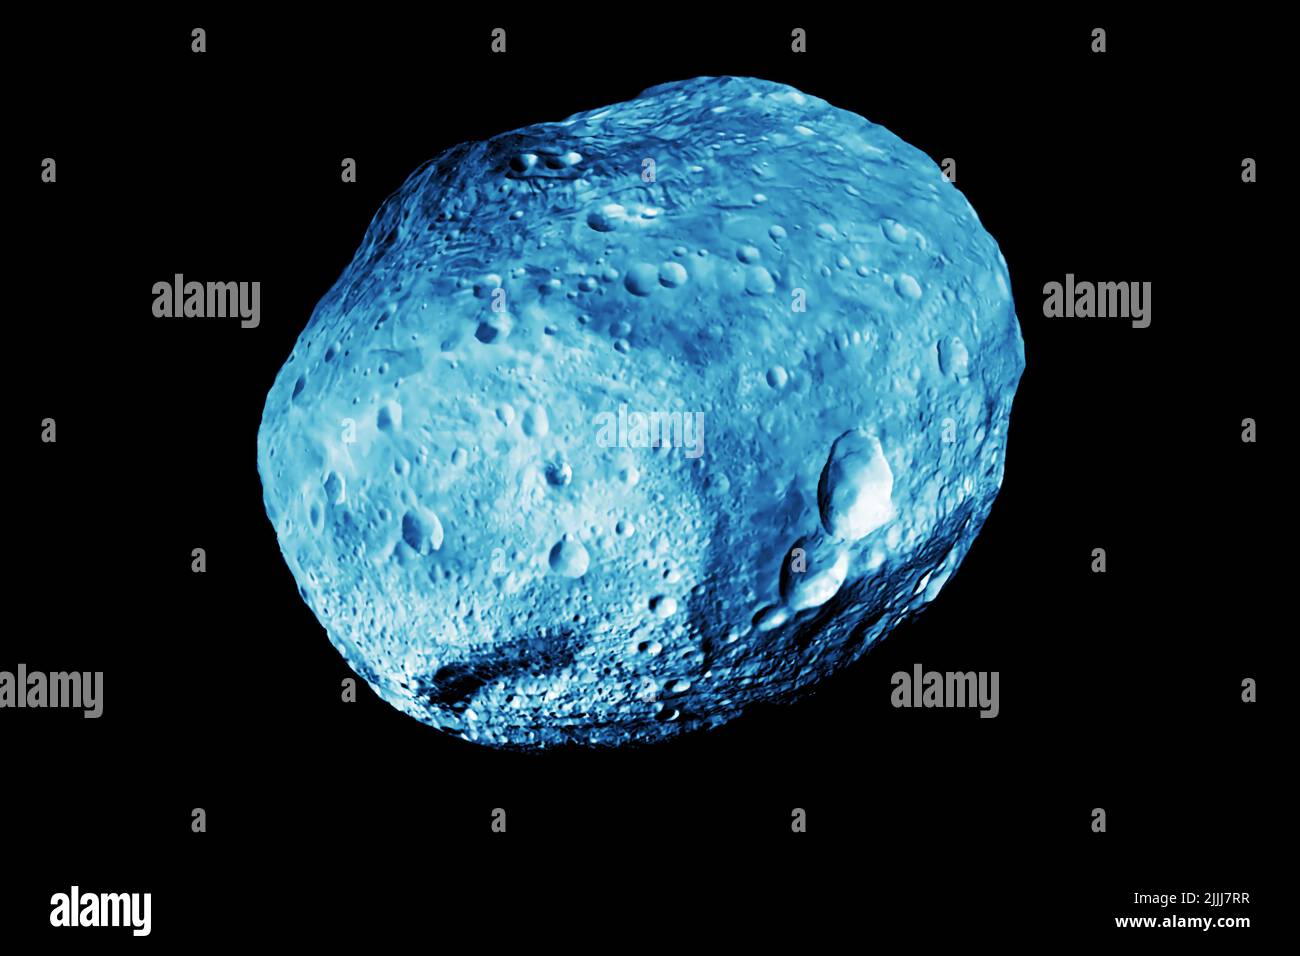 Astéroïde sur fond sombre. Éléments de cette image fournis par la NASA. Photo de haute qualité Banque D'Images